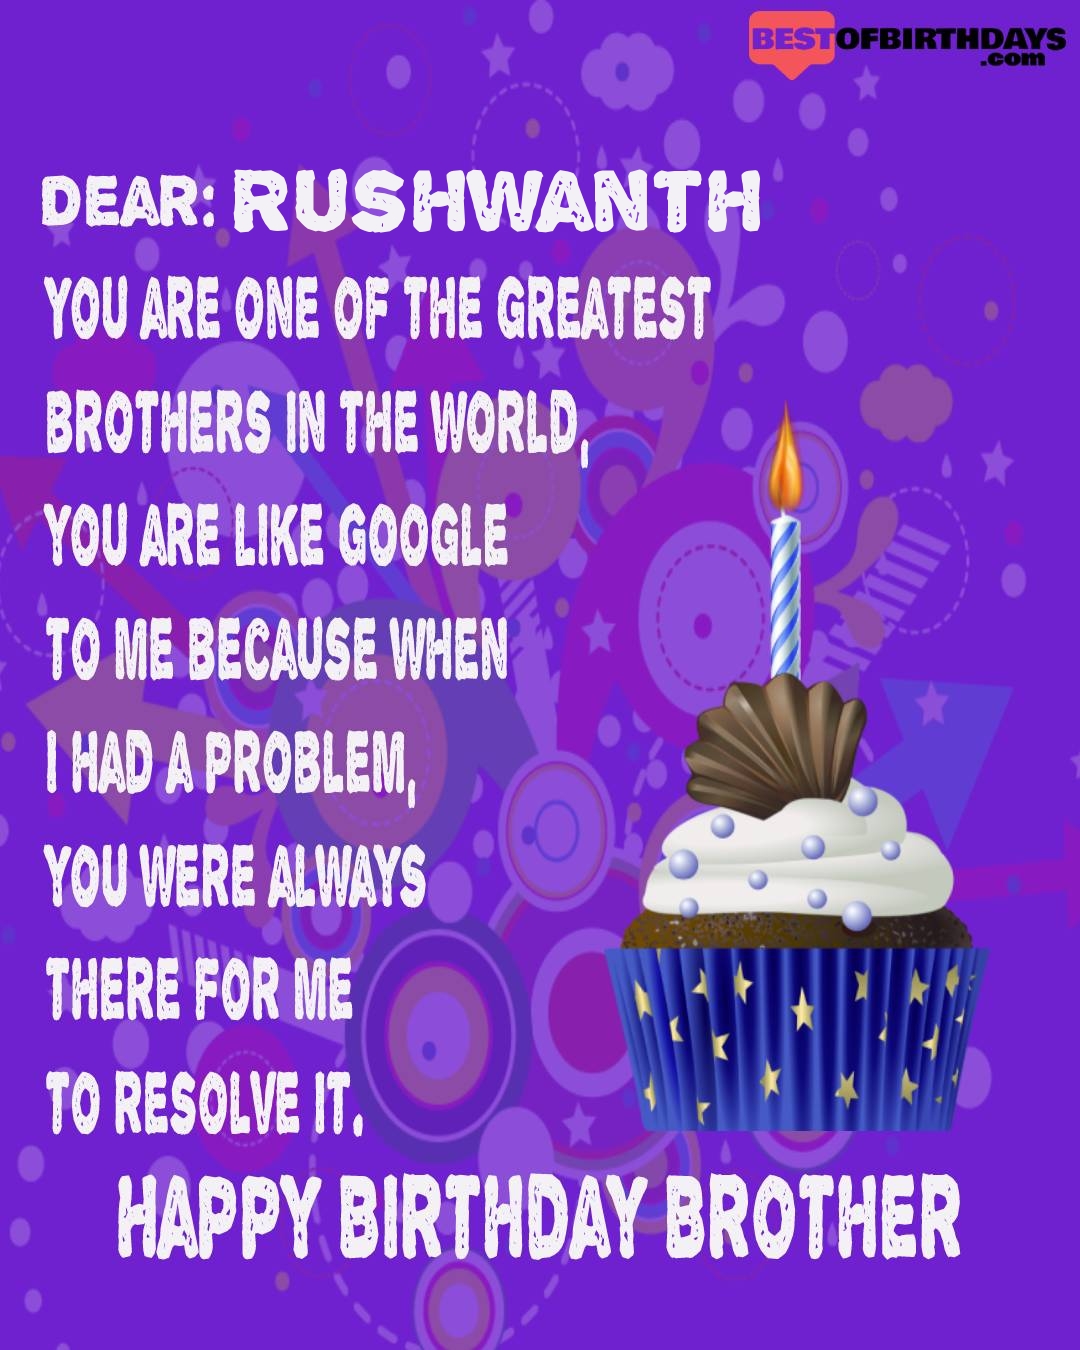 Happy birthday rushwanth bhai brother bro